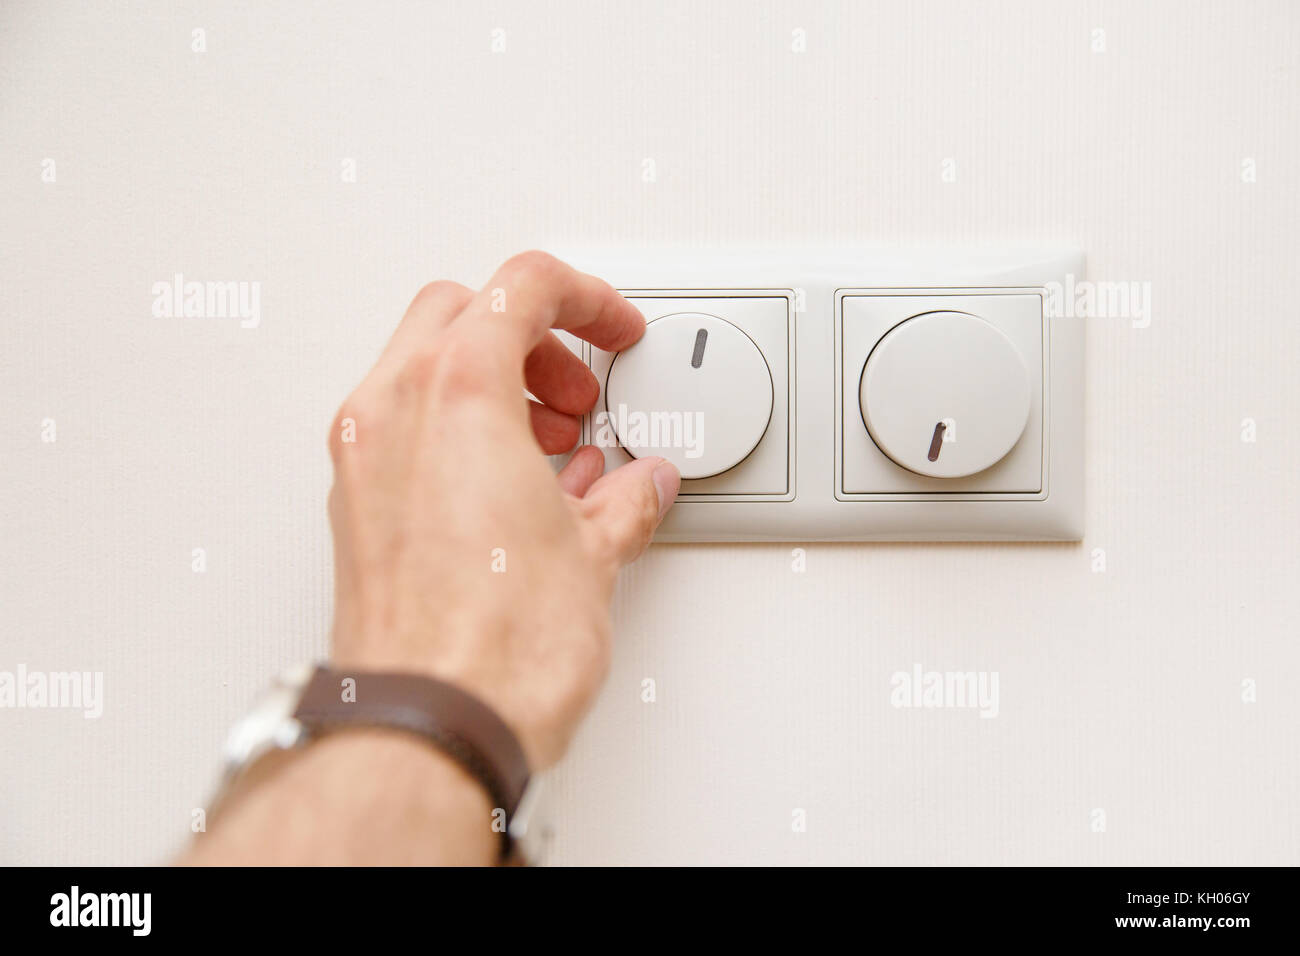 Ahorro energético Concepto: mano humana apagando el interruptor atenuador de luz eléctrica ni acondicionador el controlador de calefacción Foto de stock